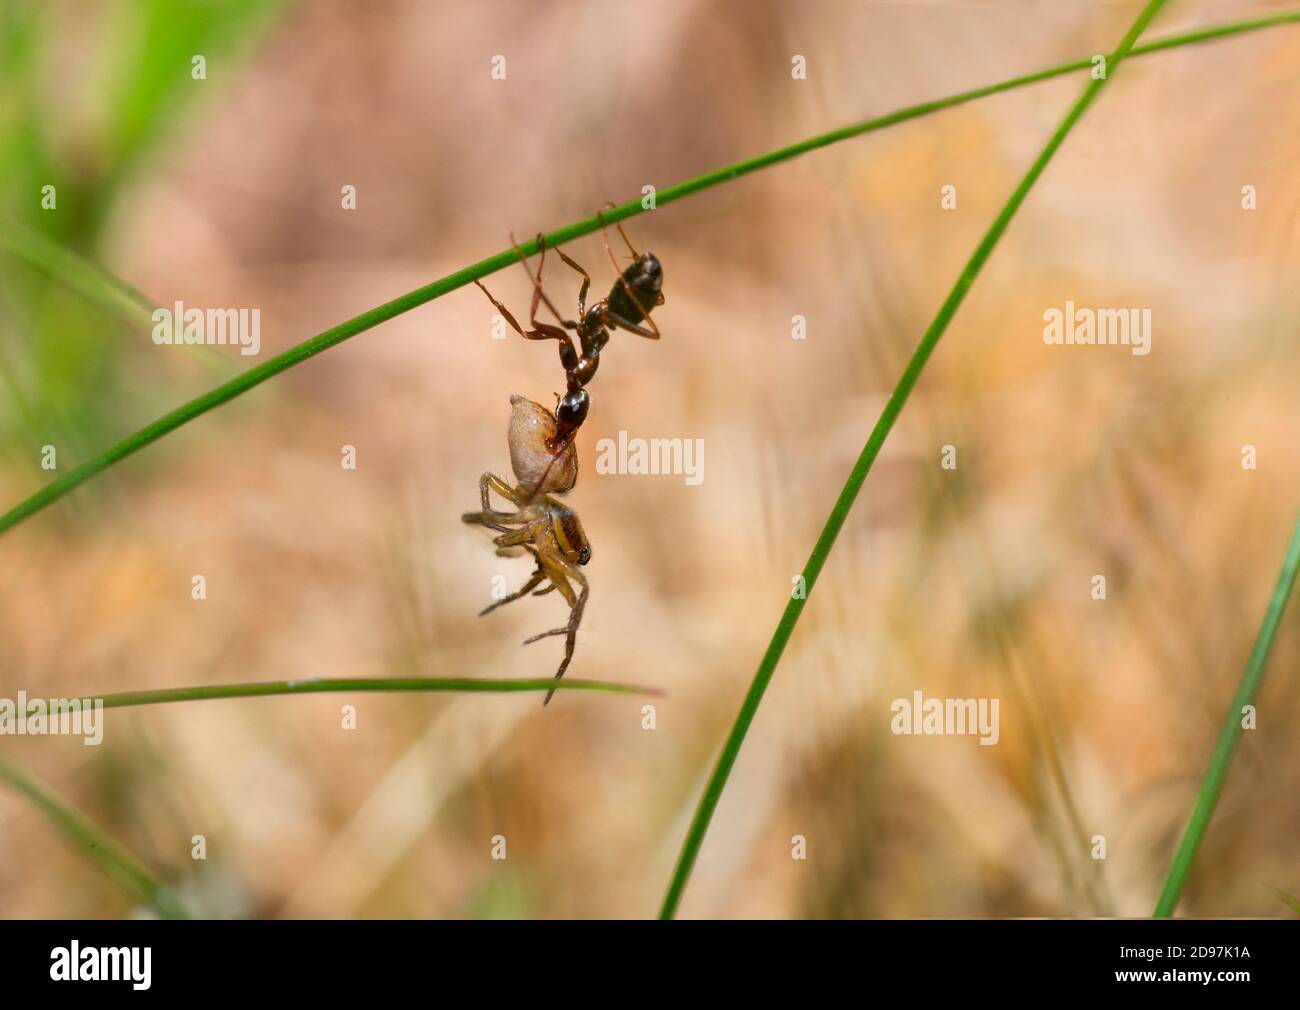 Ant (Formica cinerea) capturing a spider, Parc naturel regional des Vosges du Nord, France Stock Photo